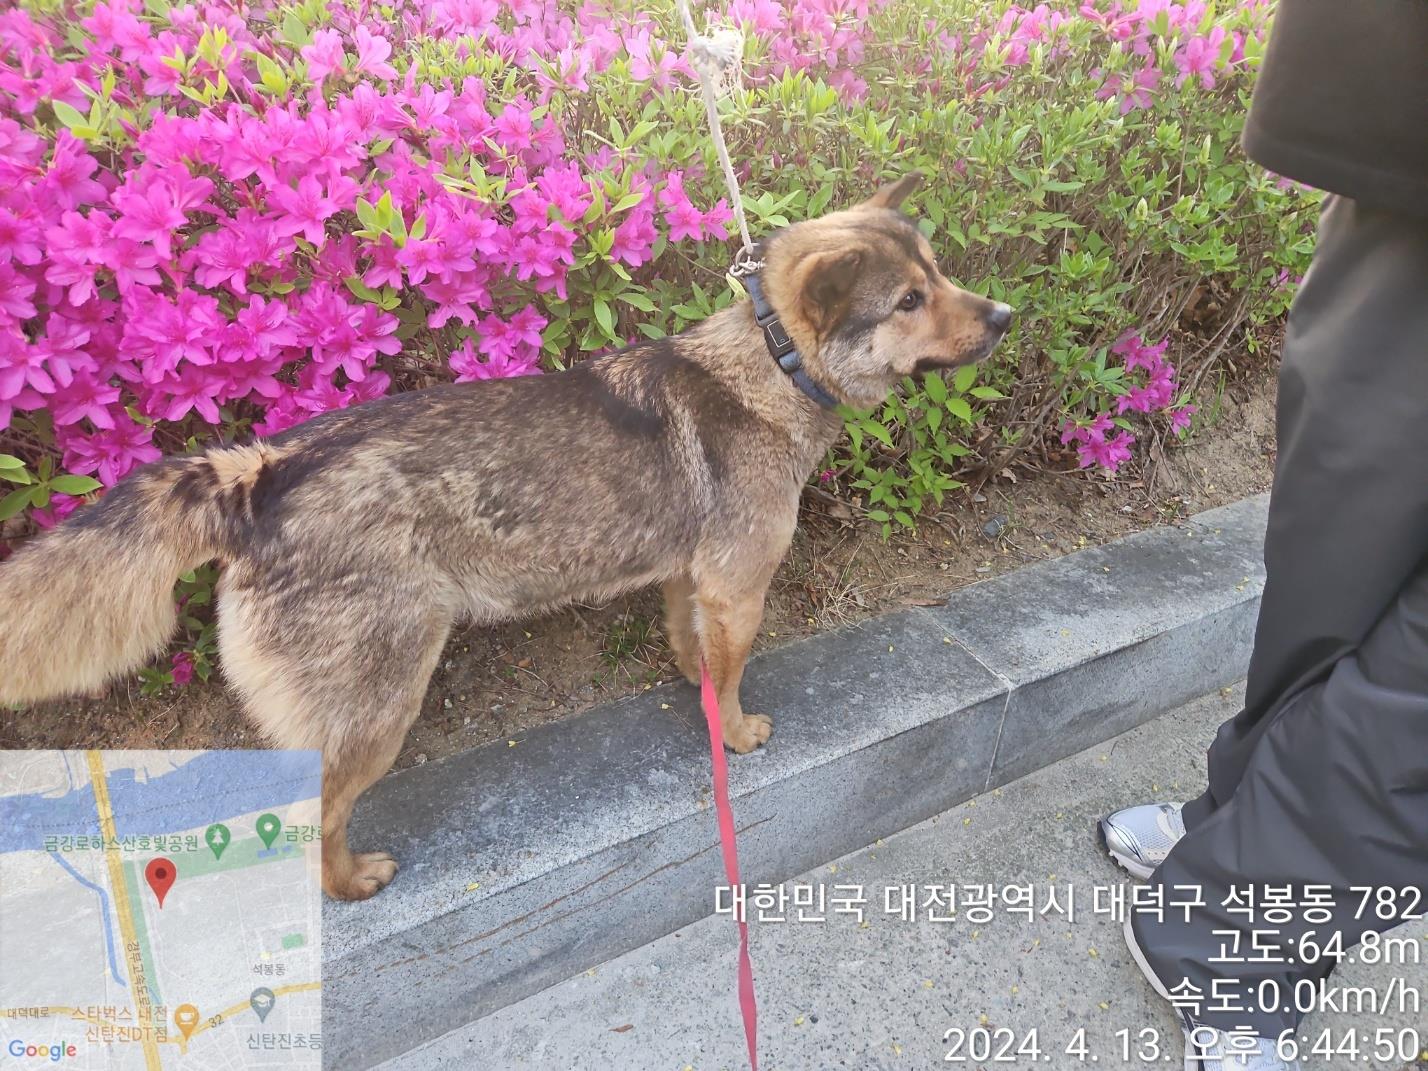 공고 번호가 대전-대덕-2024-00070인 믹스견 동물 사진